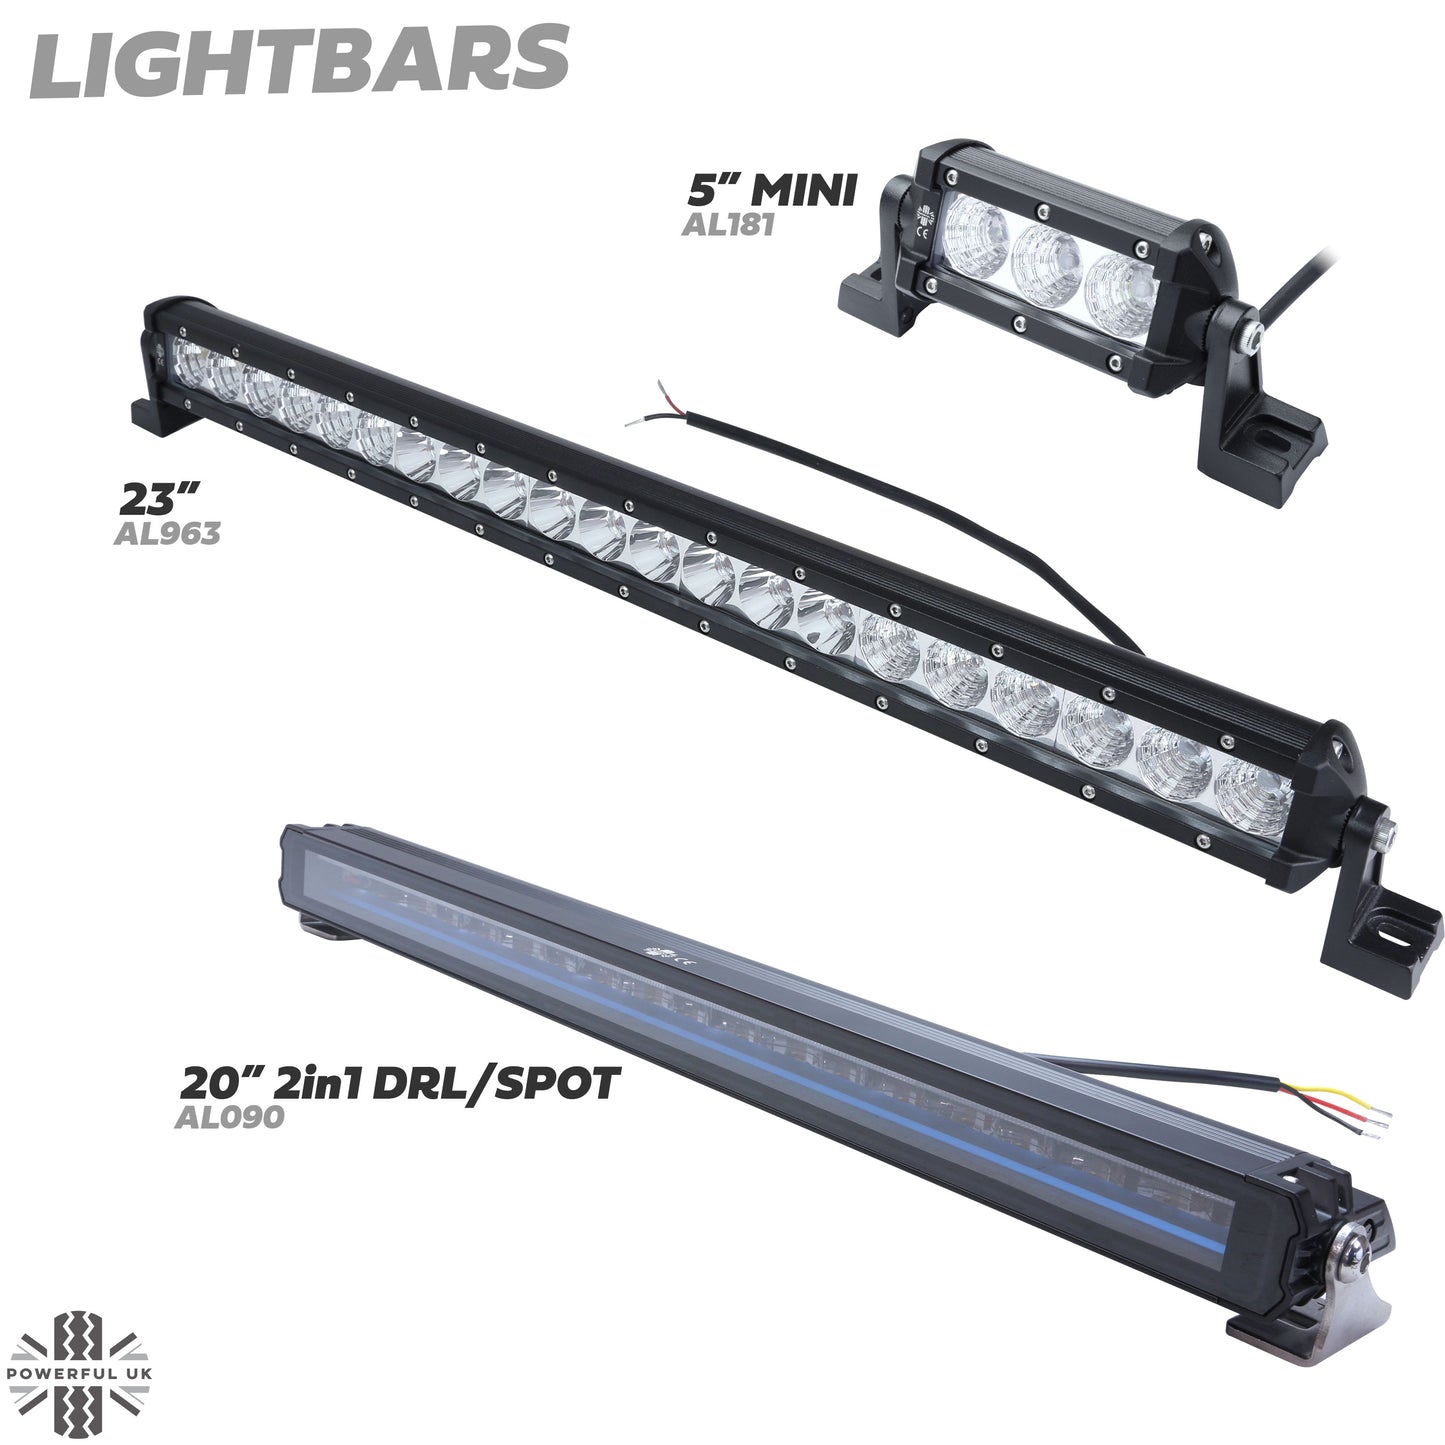 5" LED Mini Light Bar